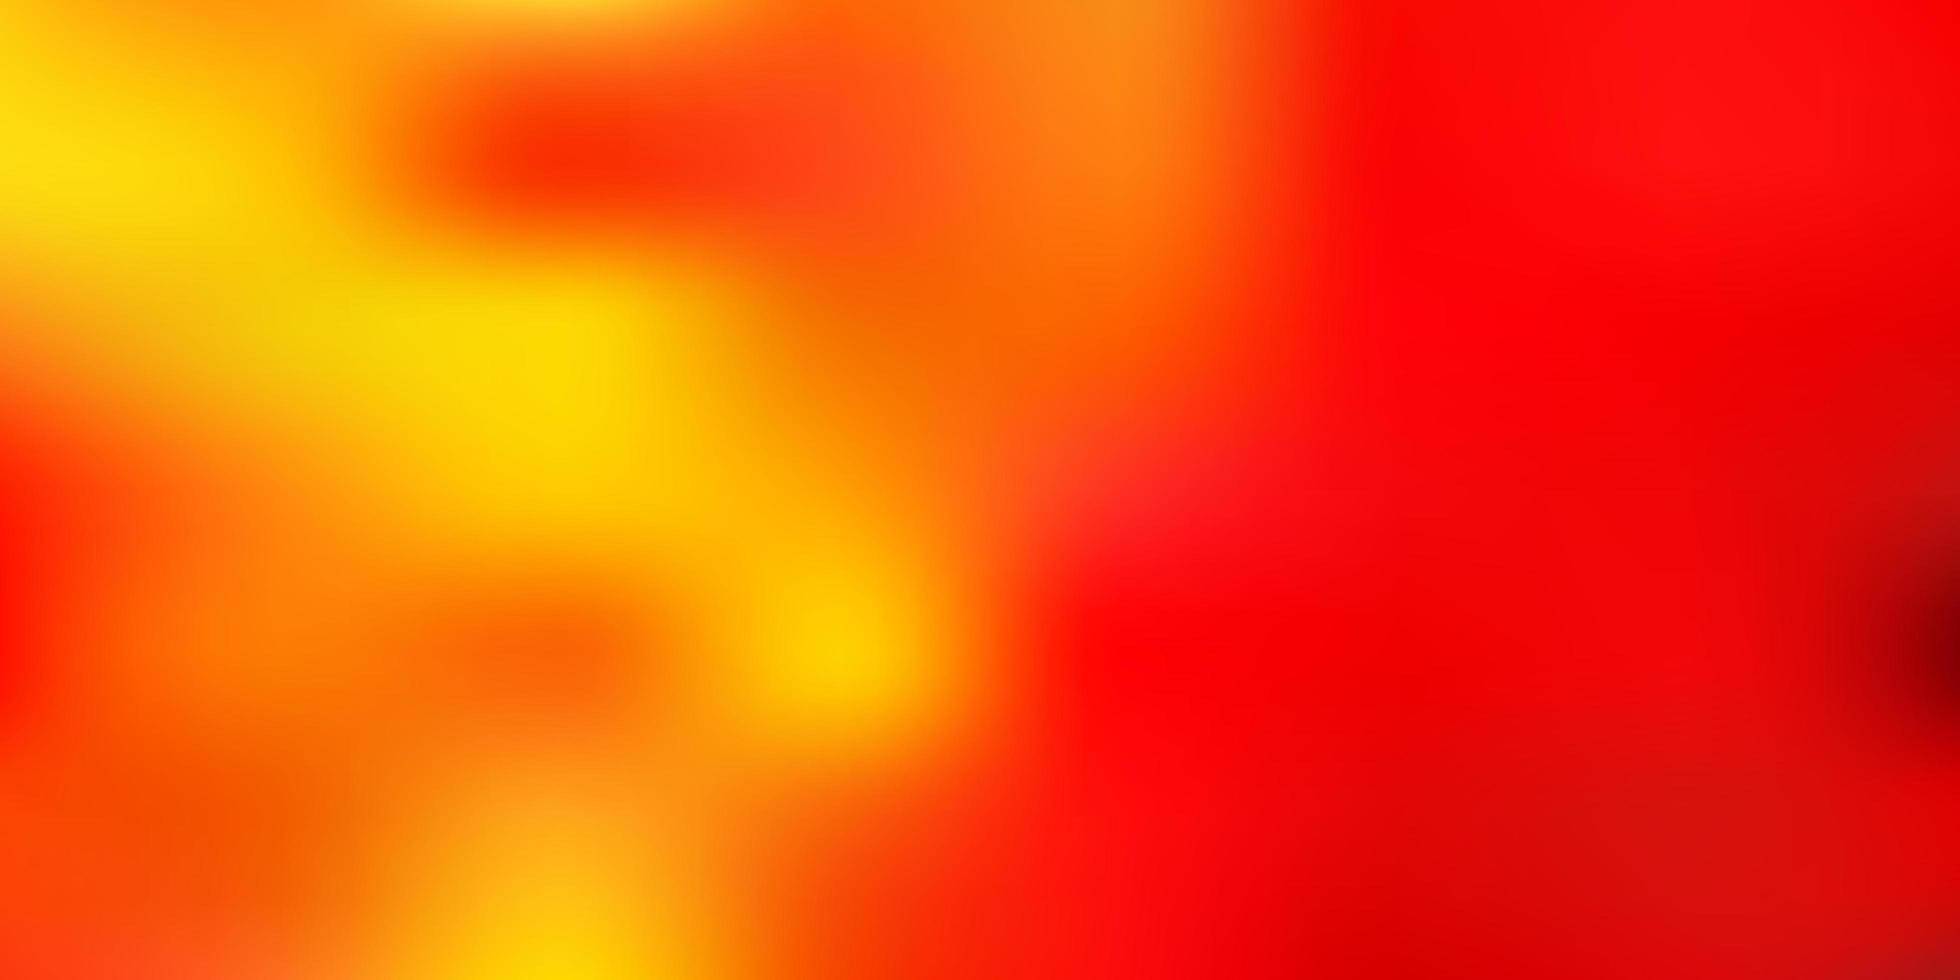 sfondo di sfocatura astratta vettoriale arancione chiaro.